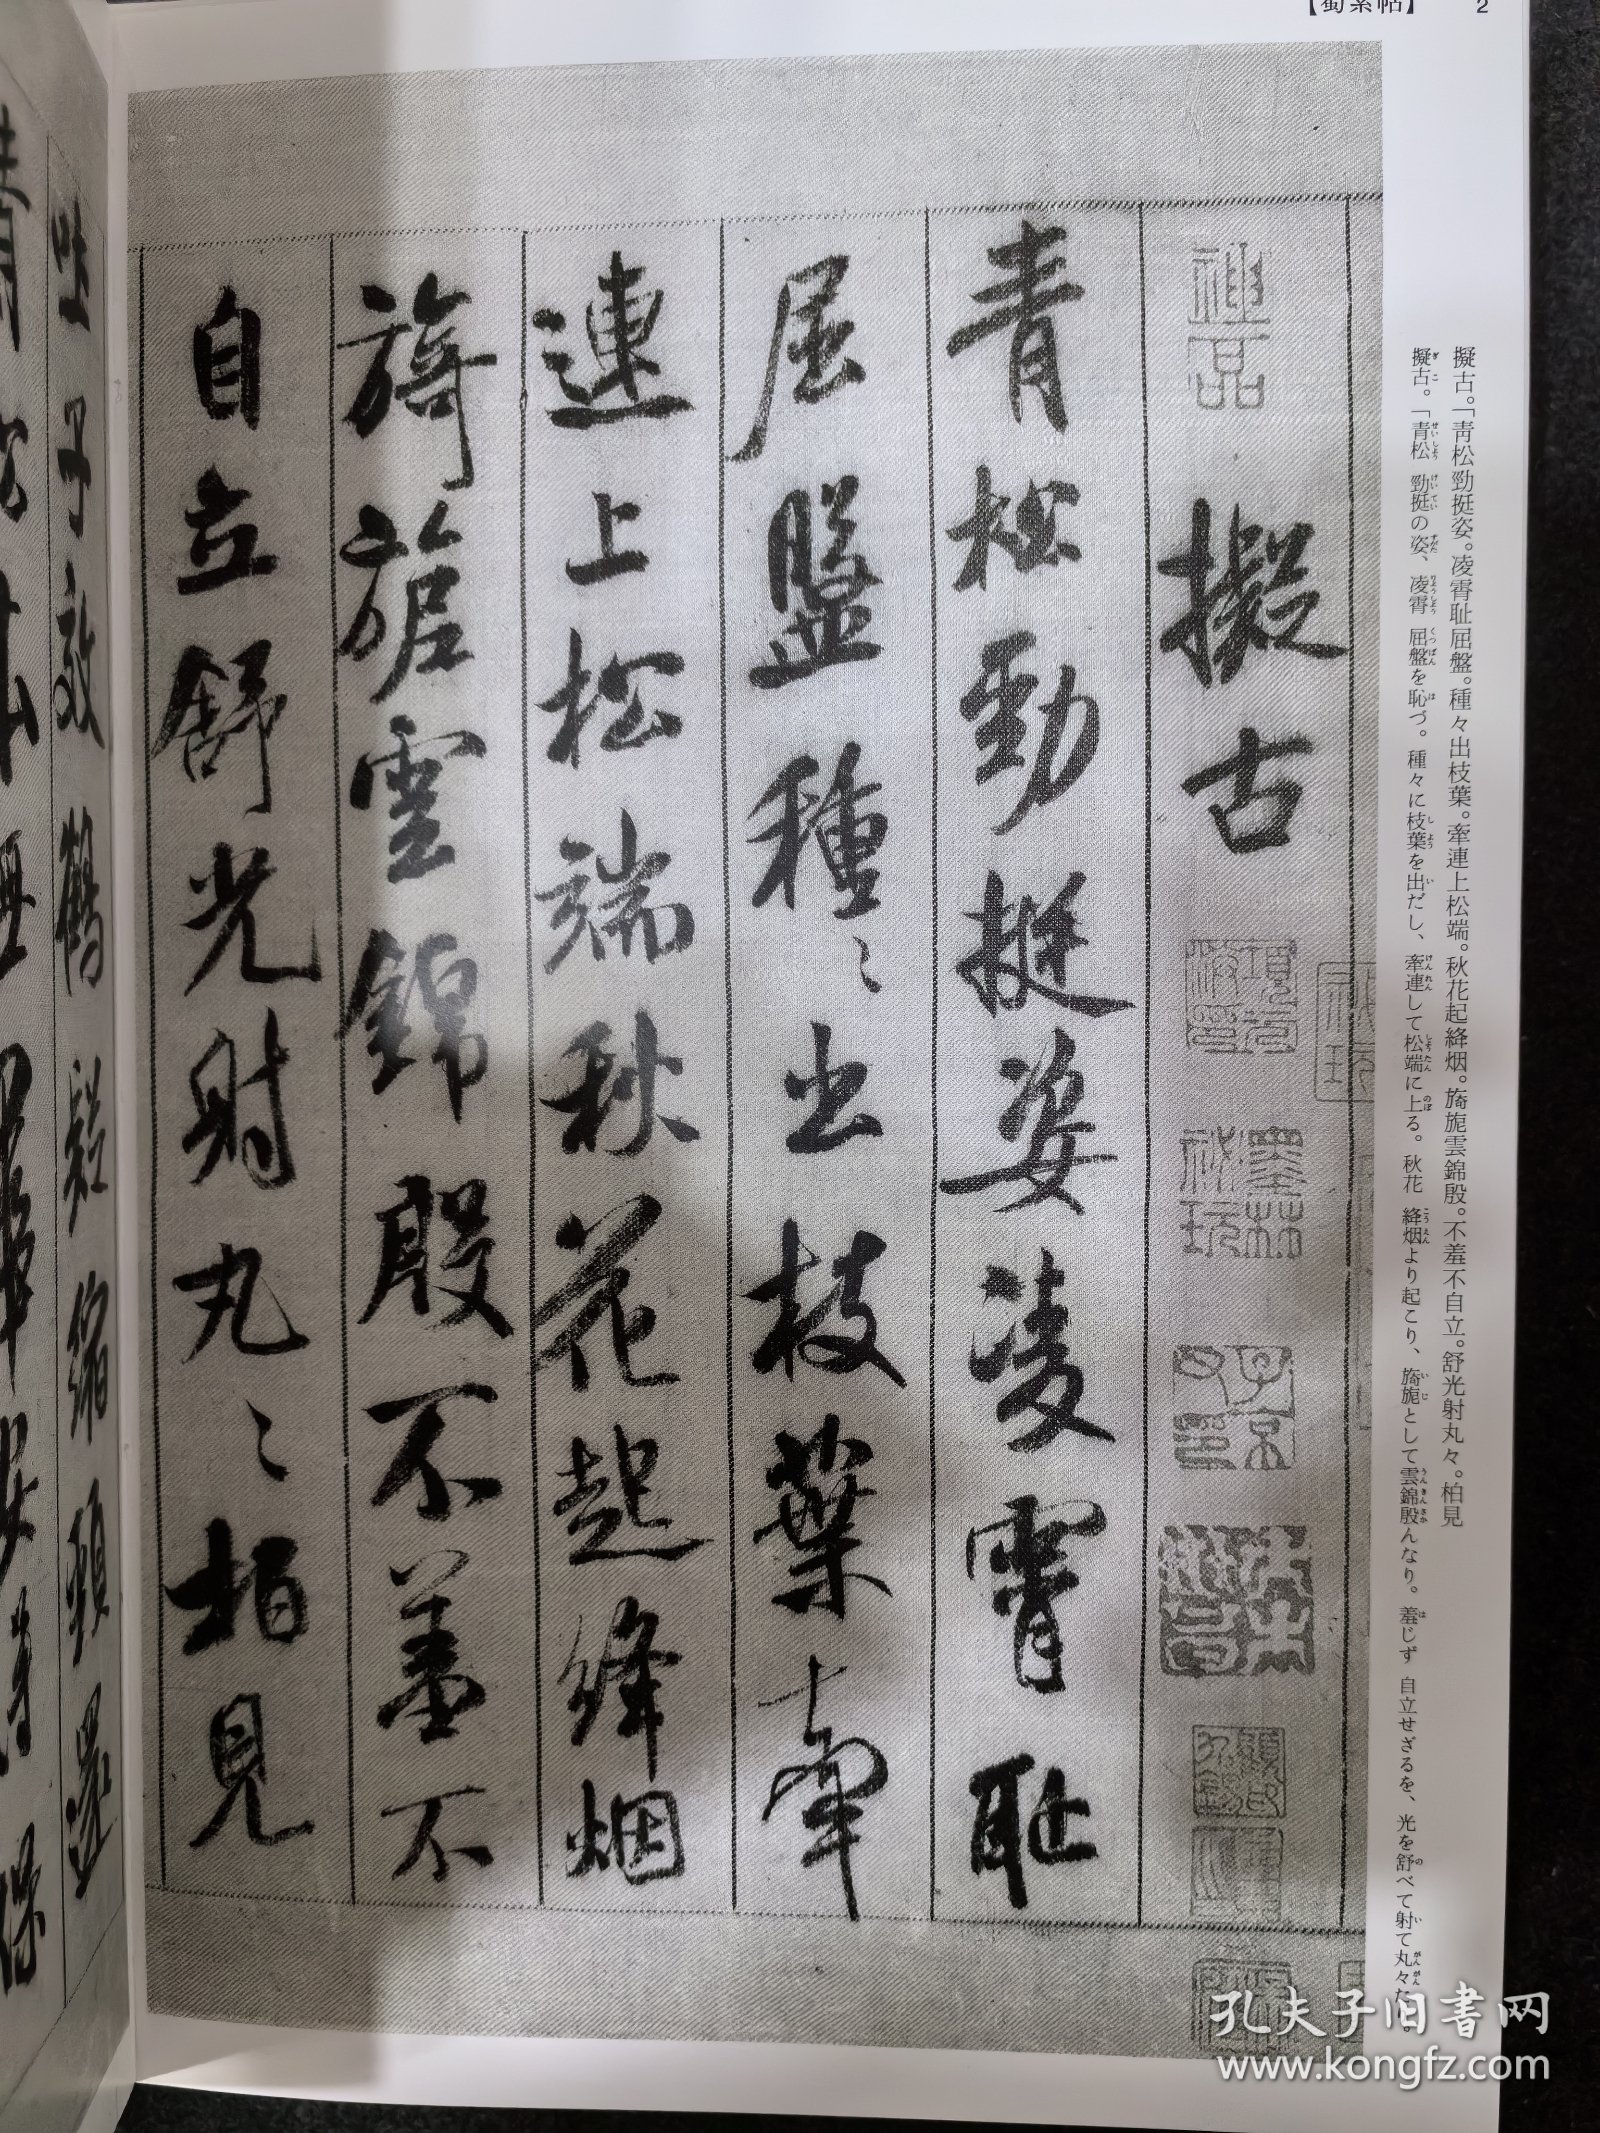 二玄社中国法书选48米芾集。正版未阅